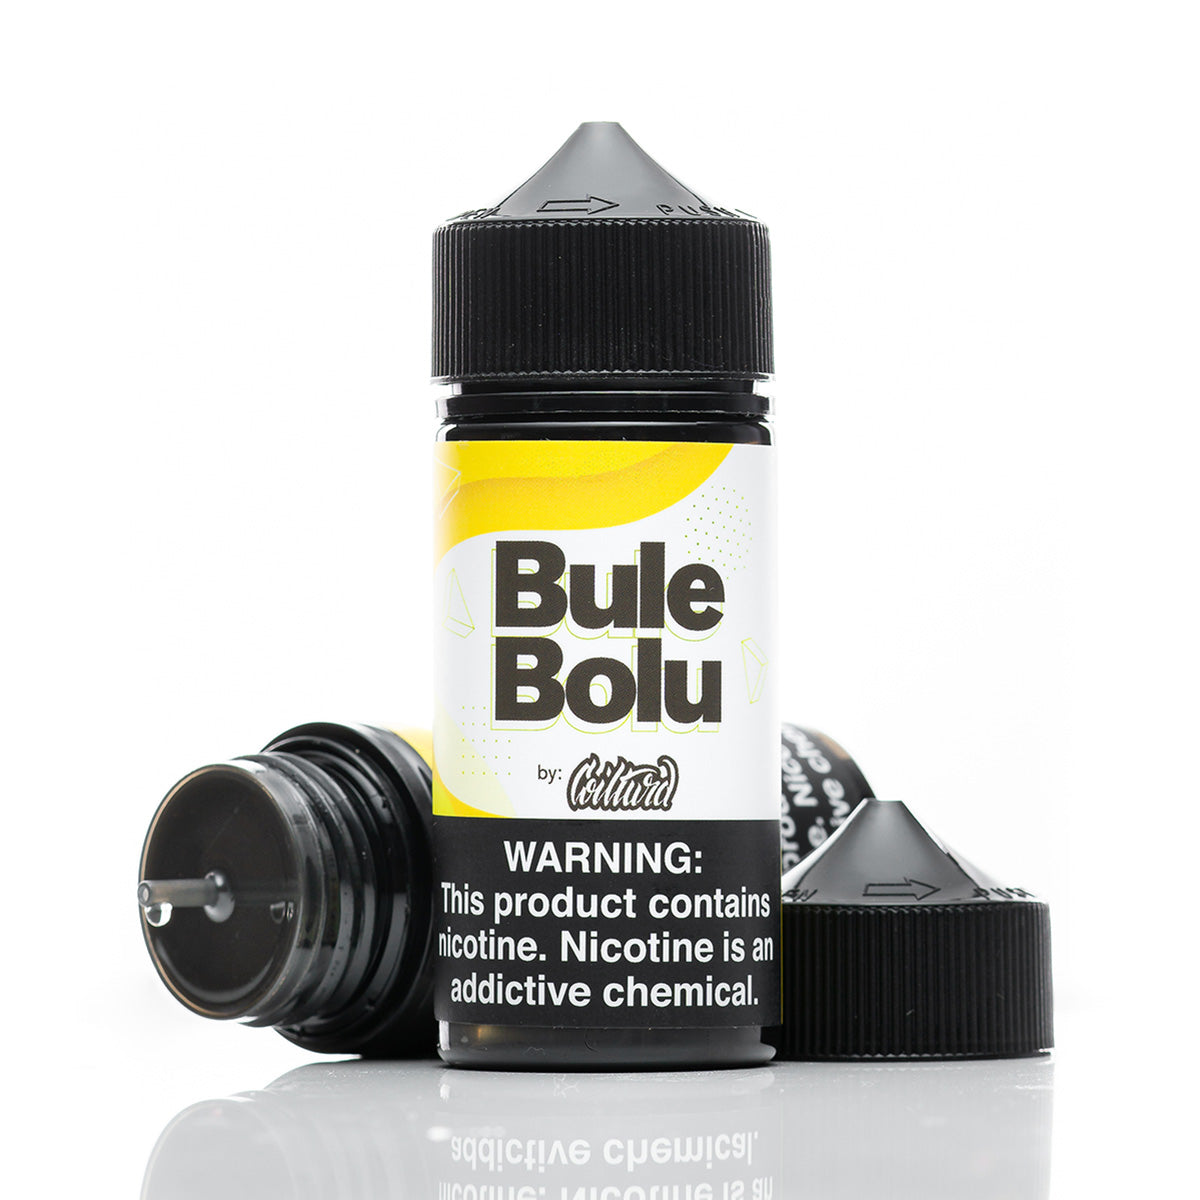 Bule Bolu 100ml Shortfill by Coilturd